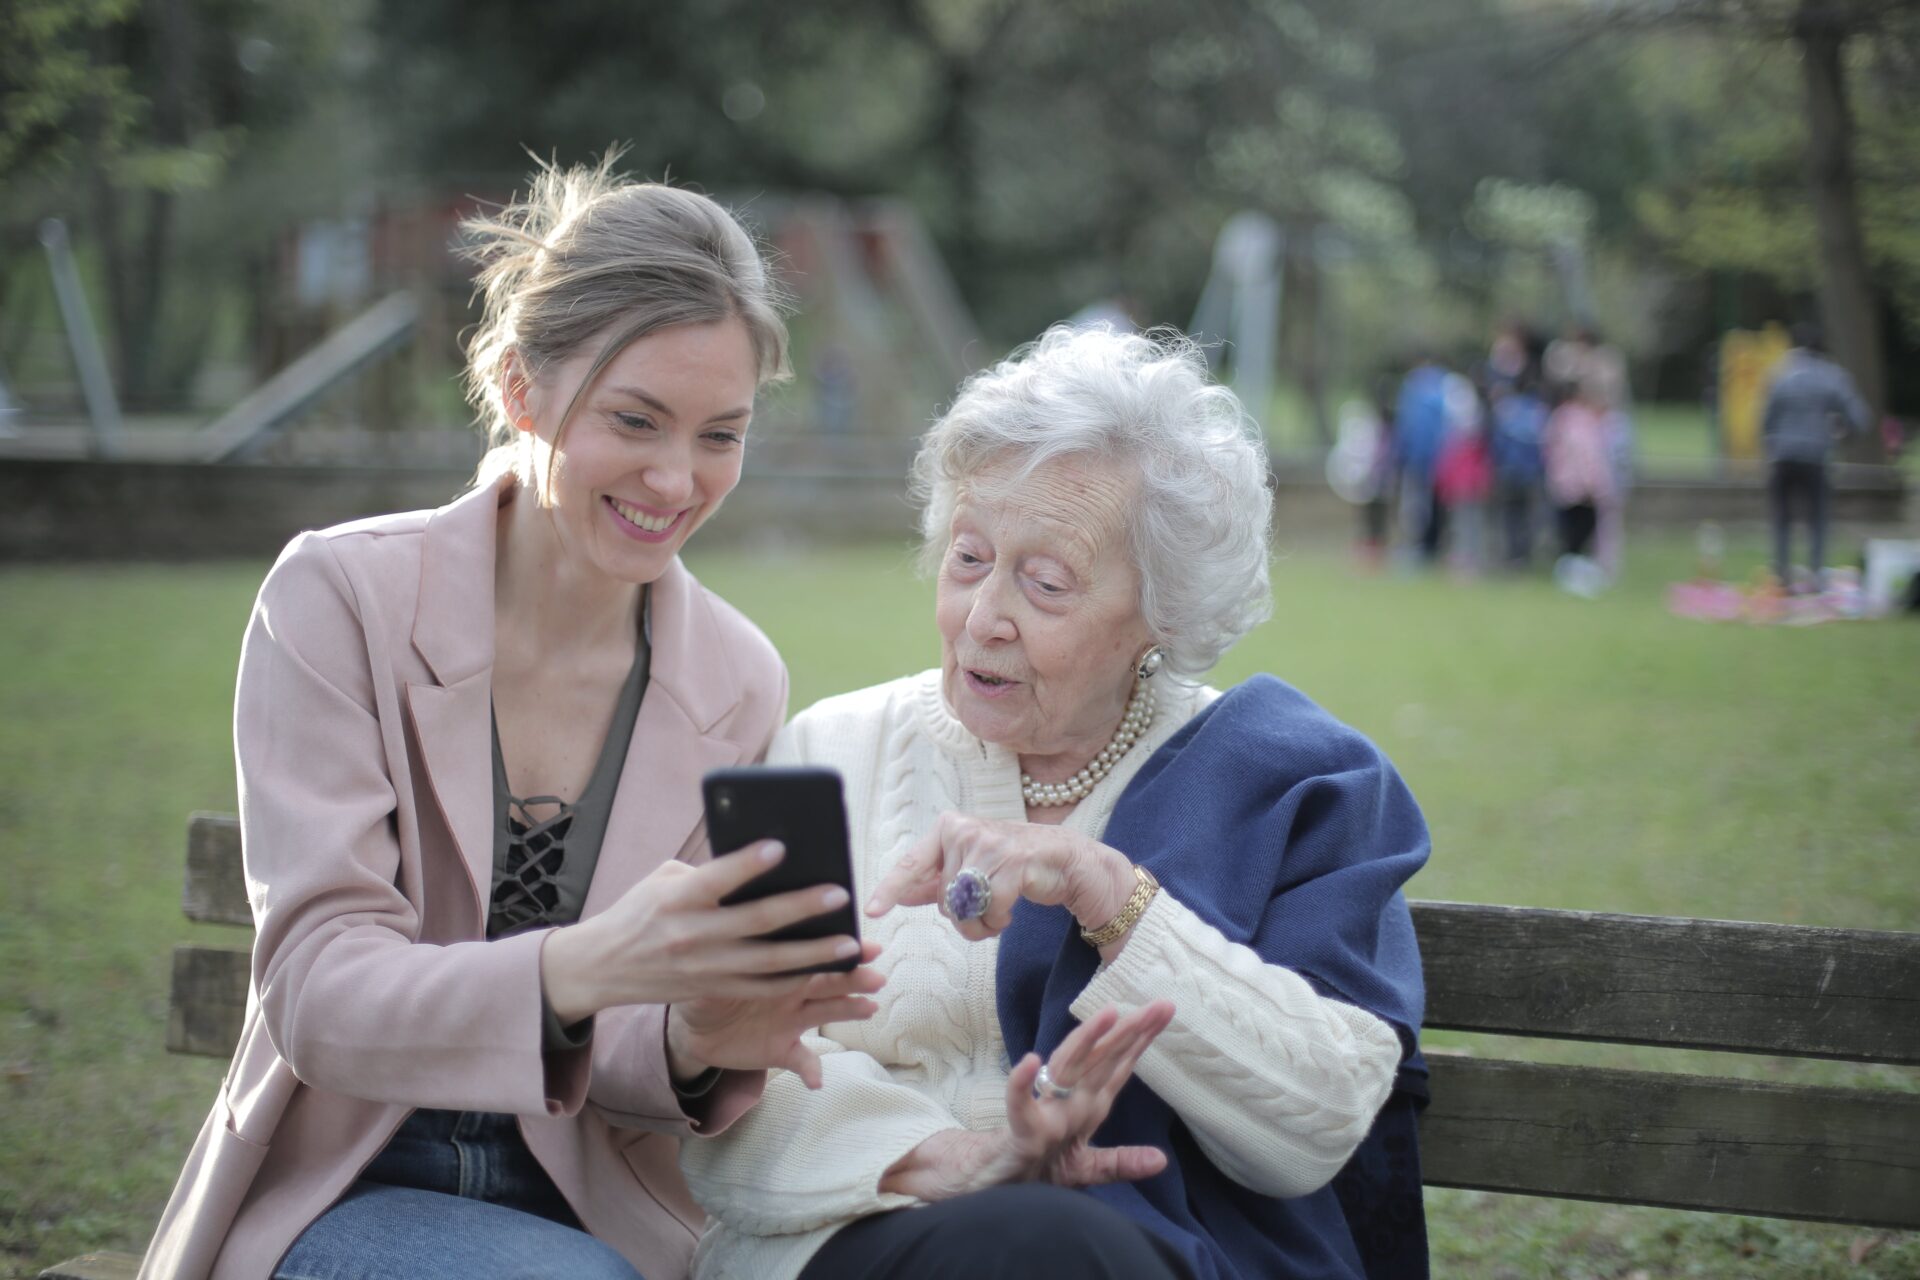 Seniorka siedząca na ławce wskazuje na smartfona trzymanego przez młodszą osobę siedzącą obok